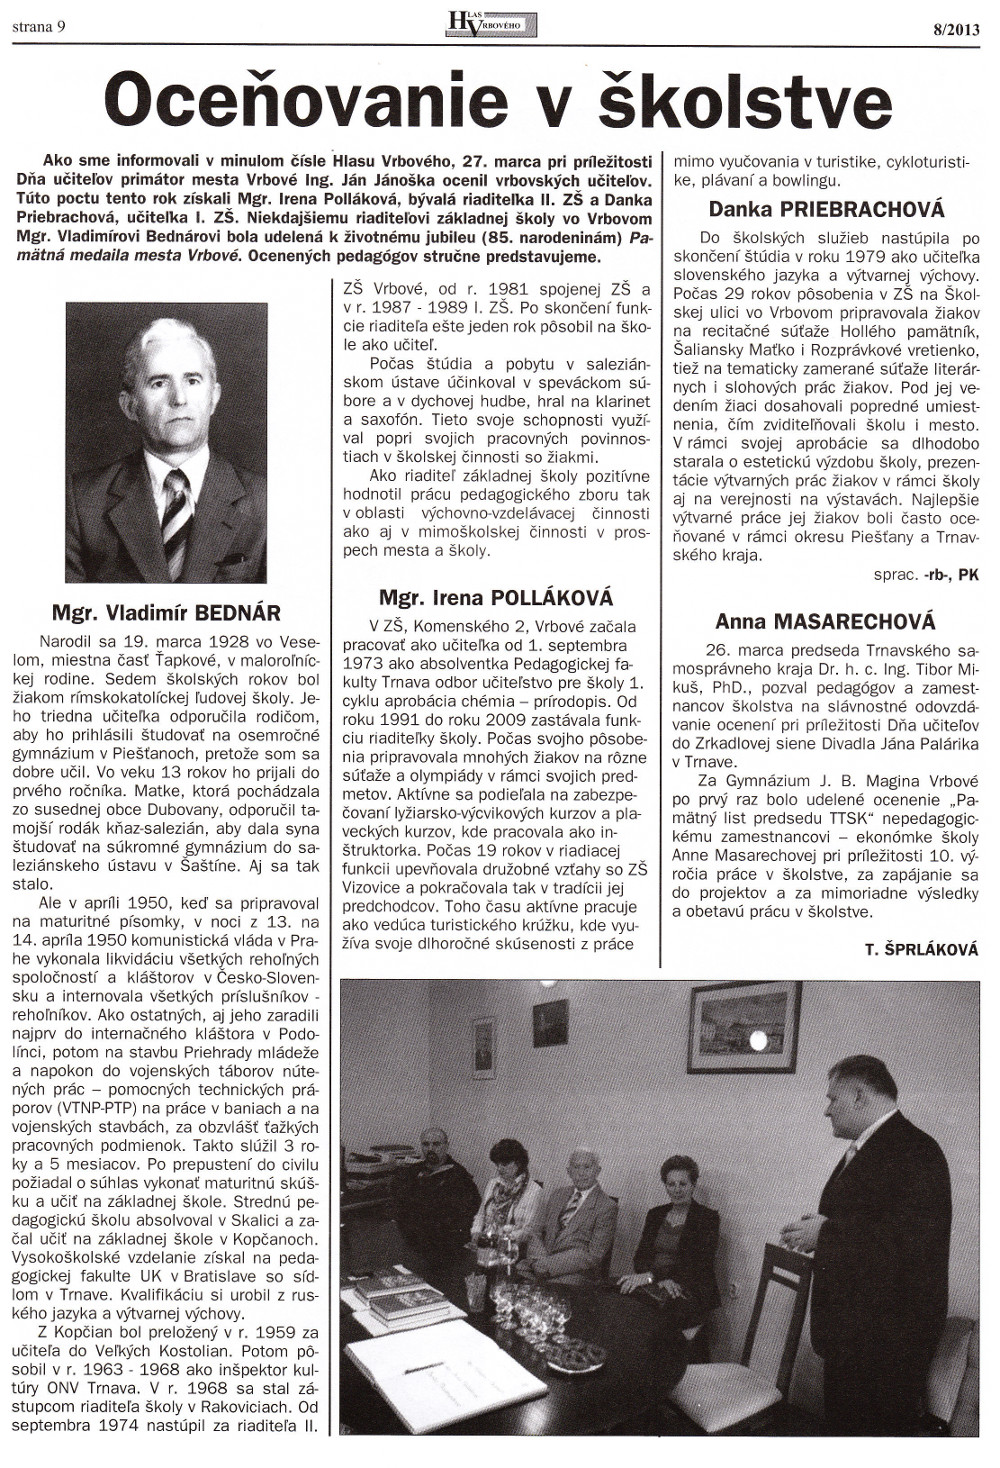 Hlas Vrbového 09/2013, strana 5